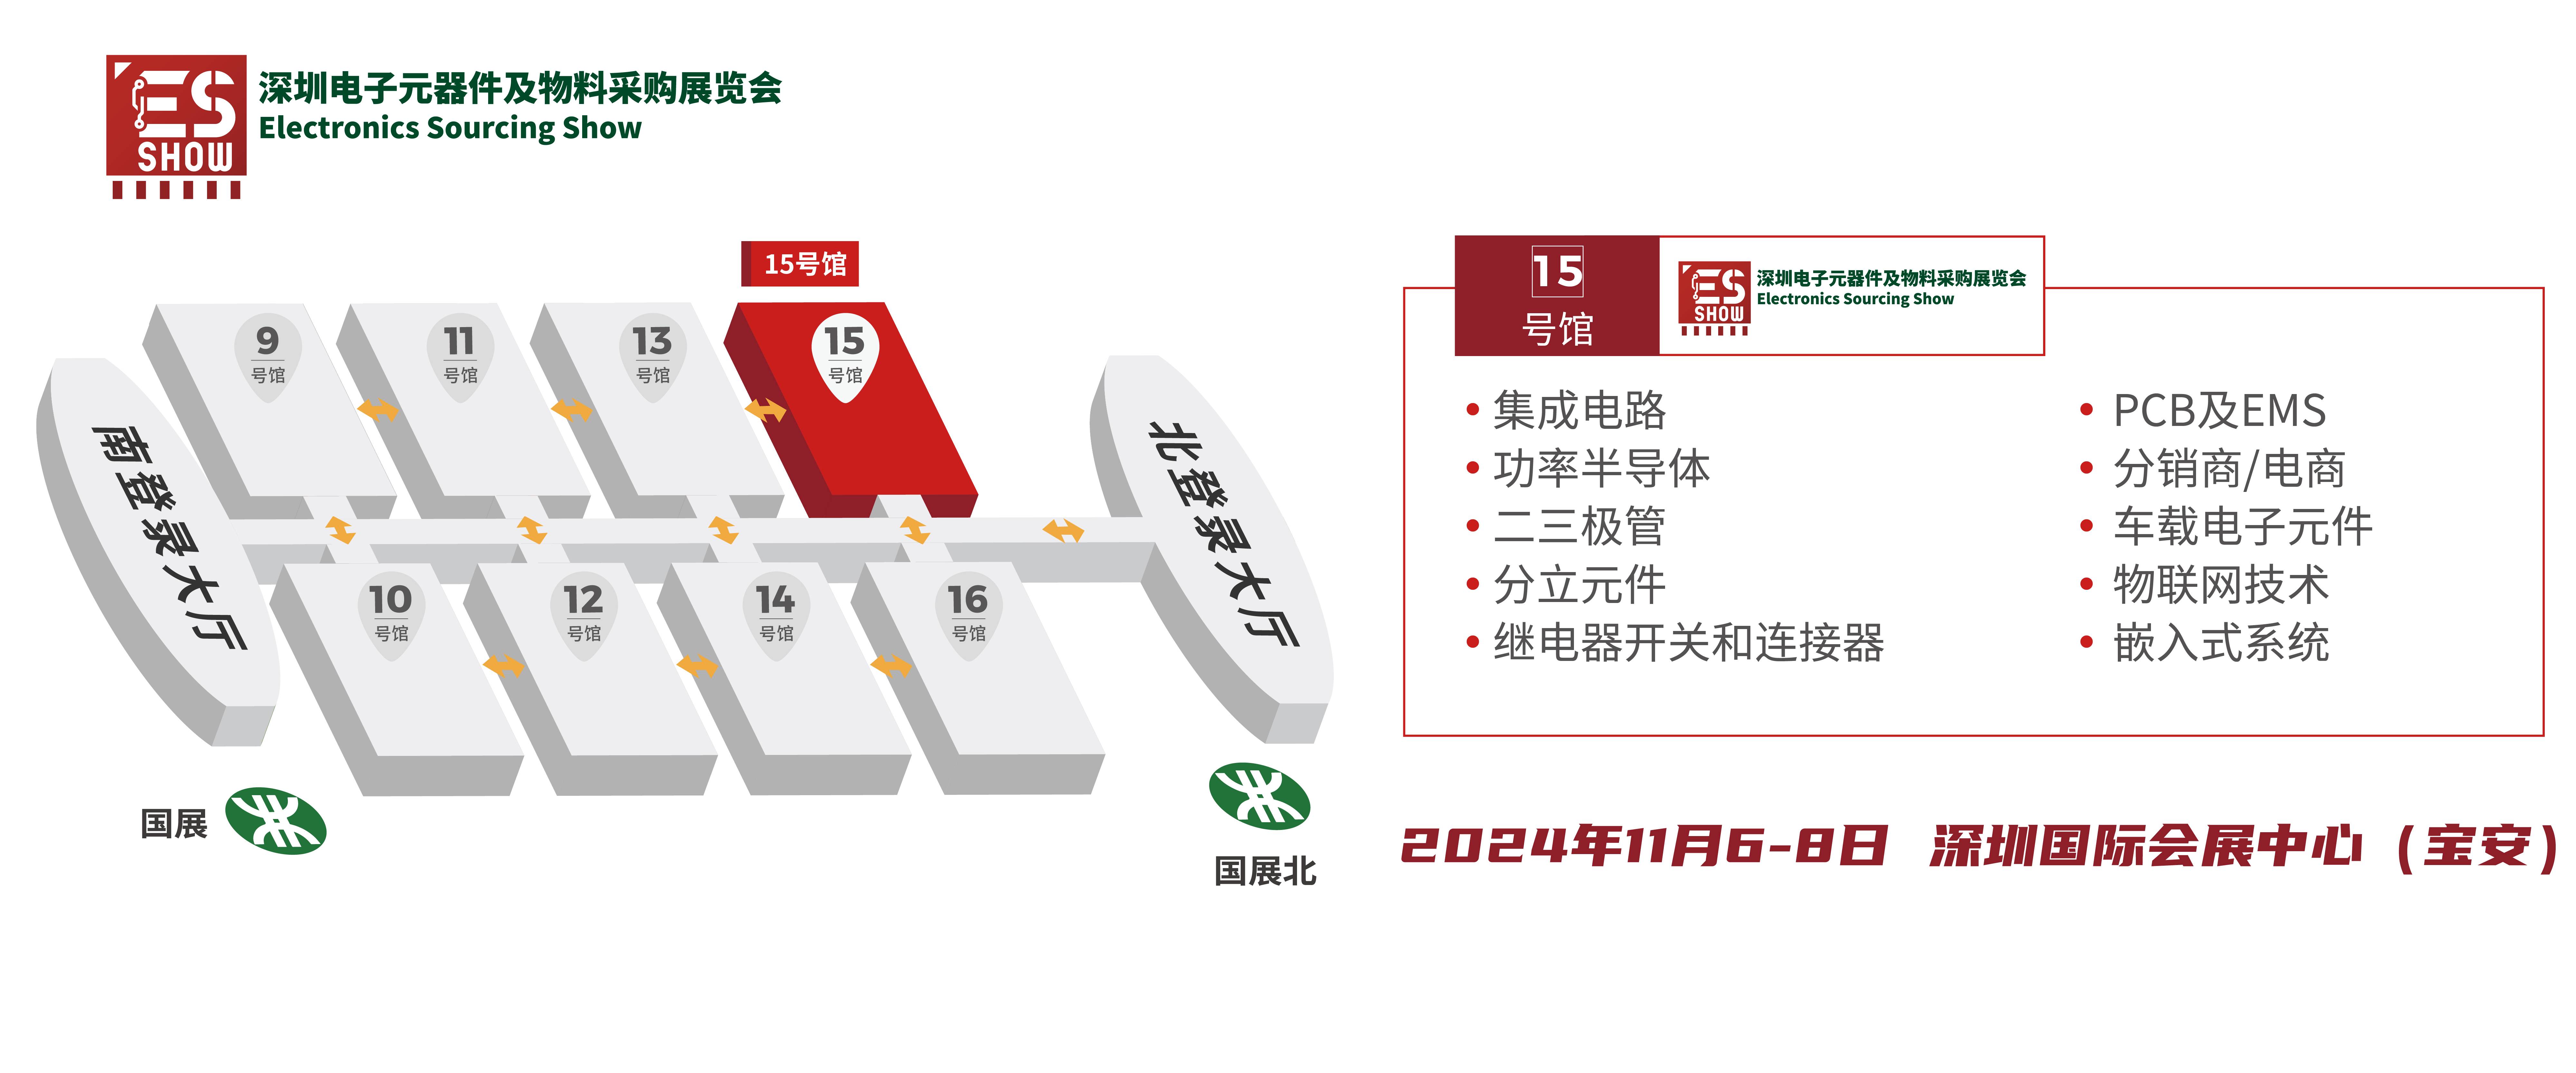 存储芯片 DRAM 深圳电子展 中国电子展 华南电子展